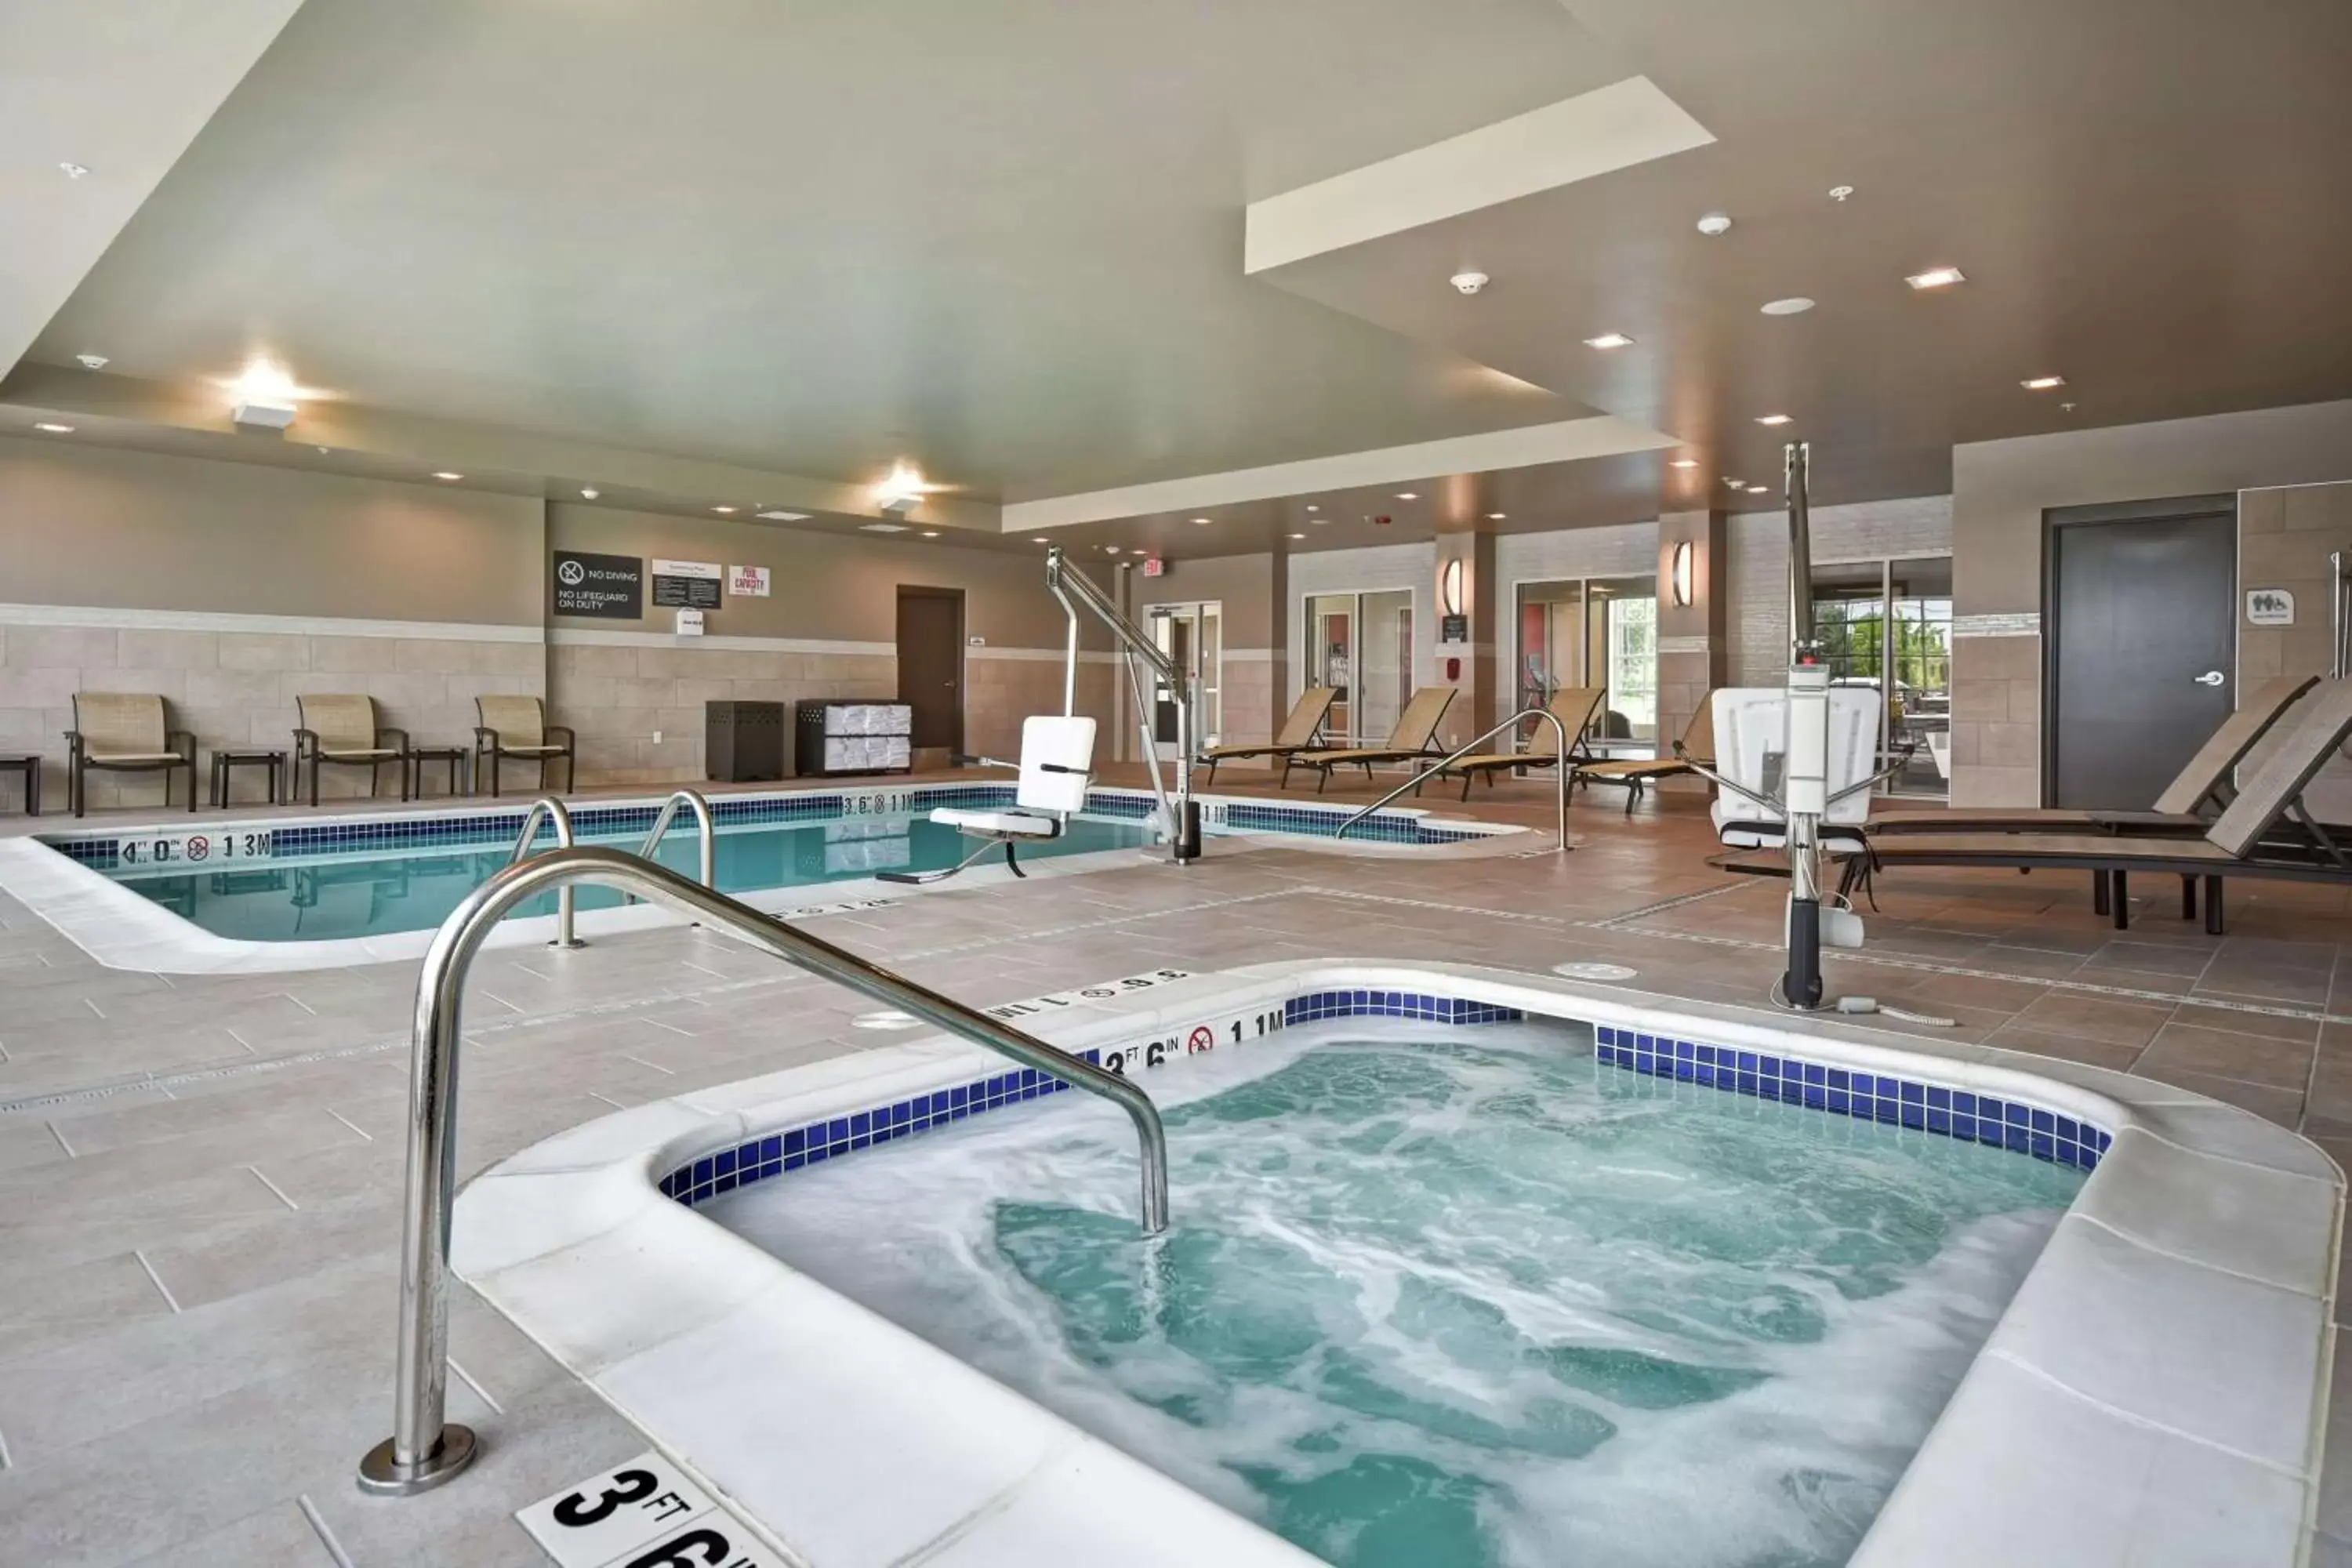 Hot Tub, Swimming Pool in Hilton Garden Inn Lansing West, Mi